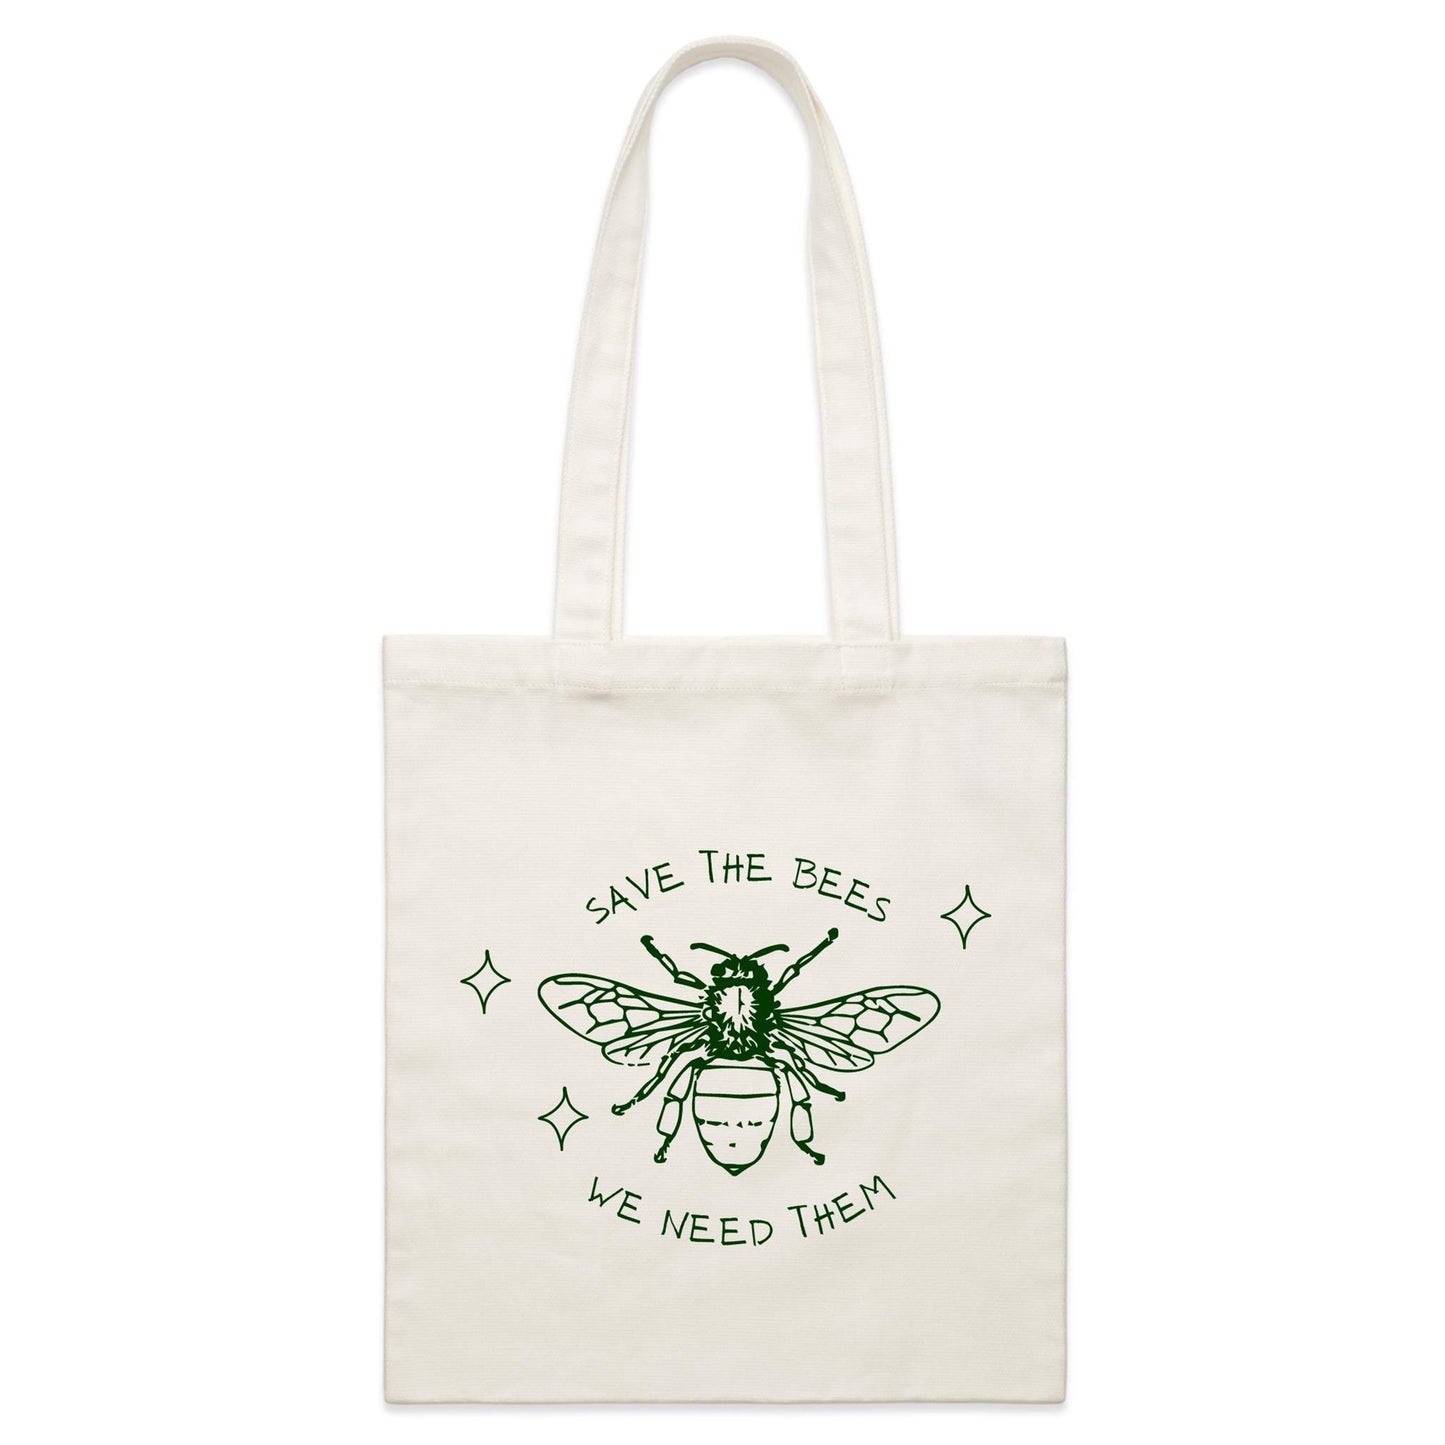 Save The Bees - Parcel Canvas Tote Bag Default Title Parcel Tote Bag